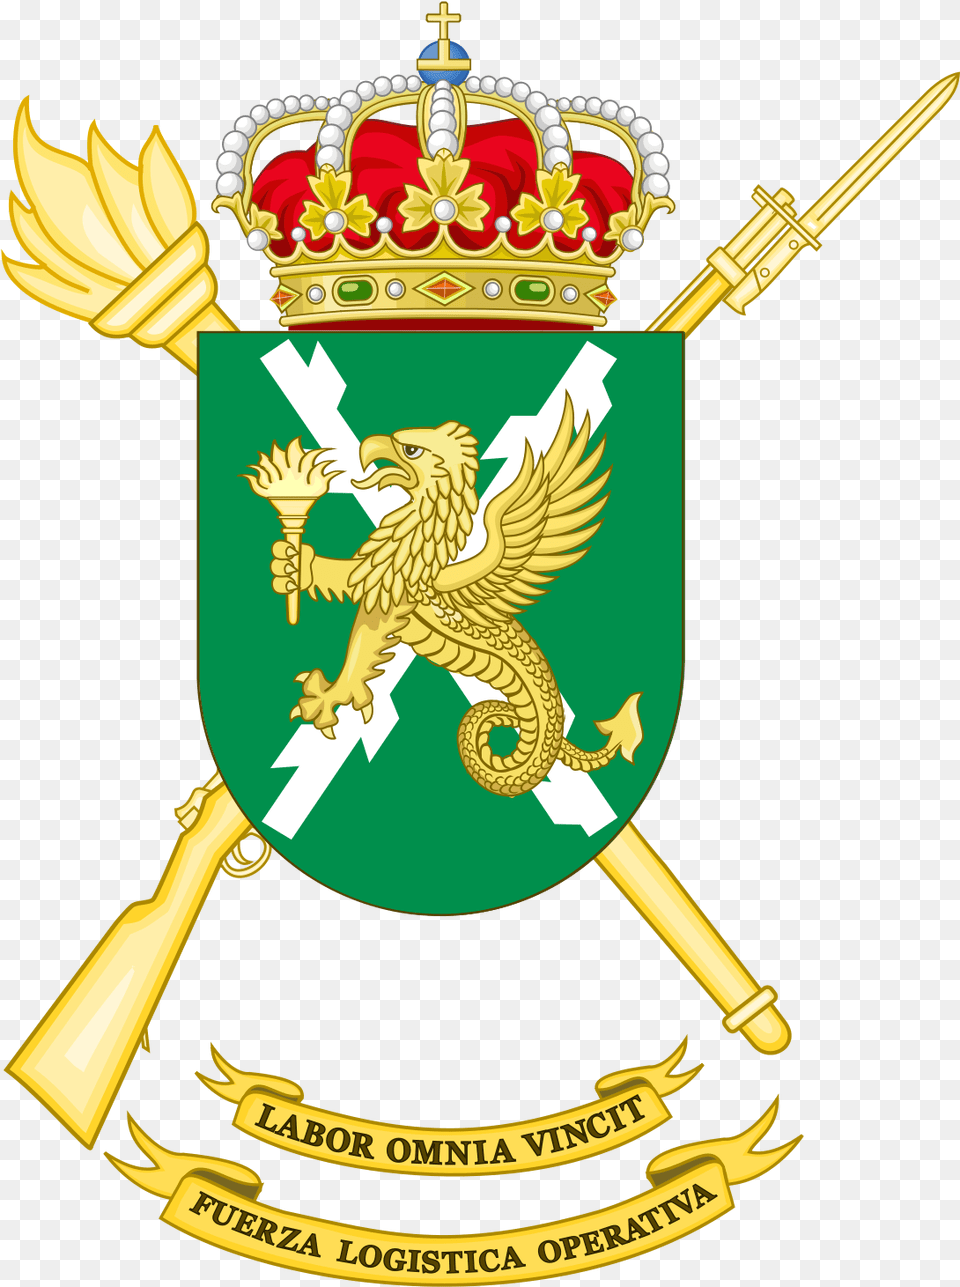 Escudo De Colombia, Emblem, Symbol, Logo, Badge Free Png Download